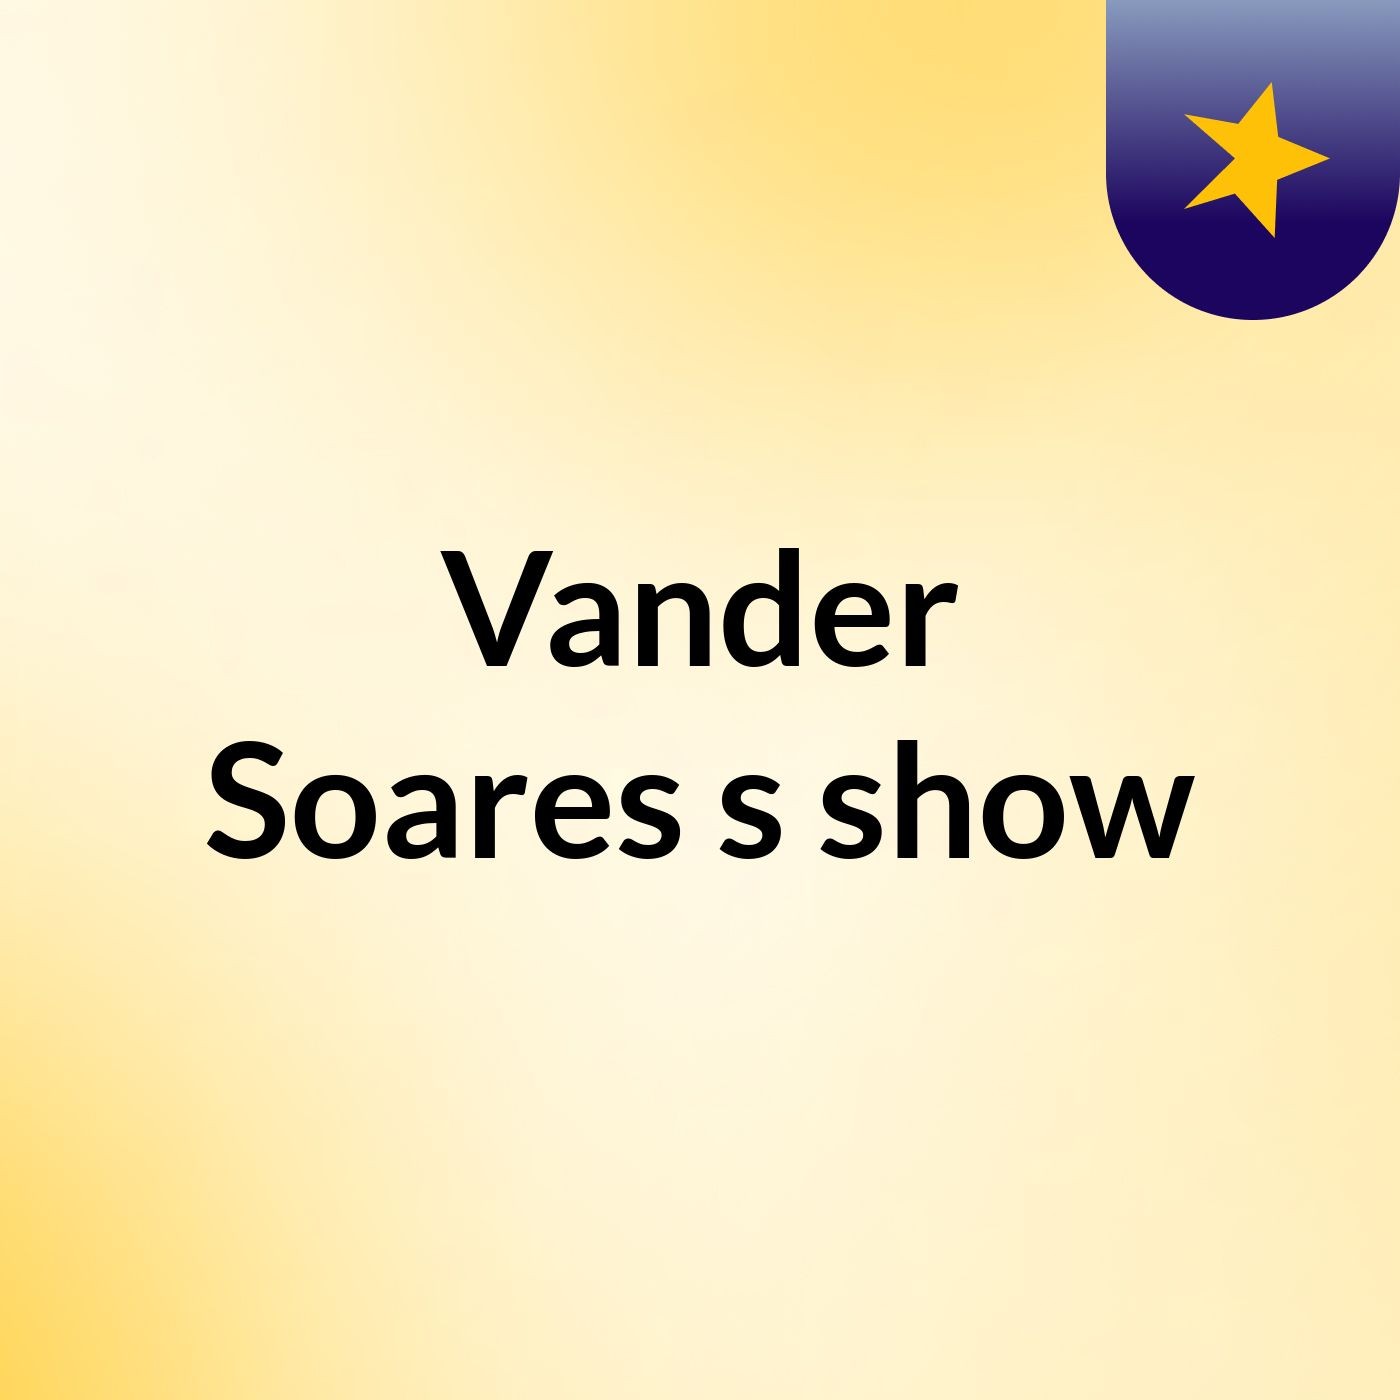 Vander Soares's show